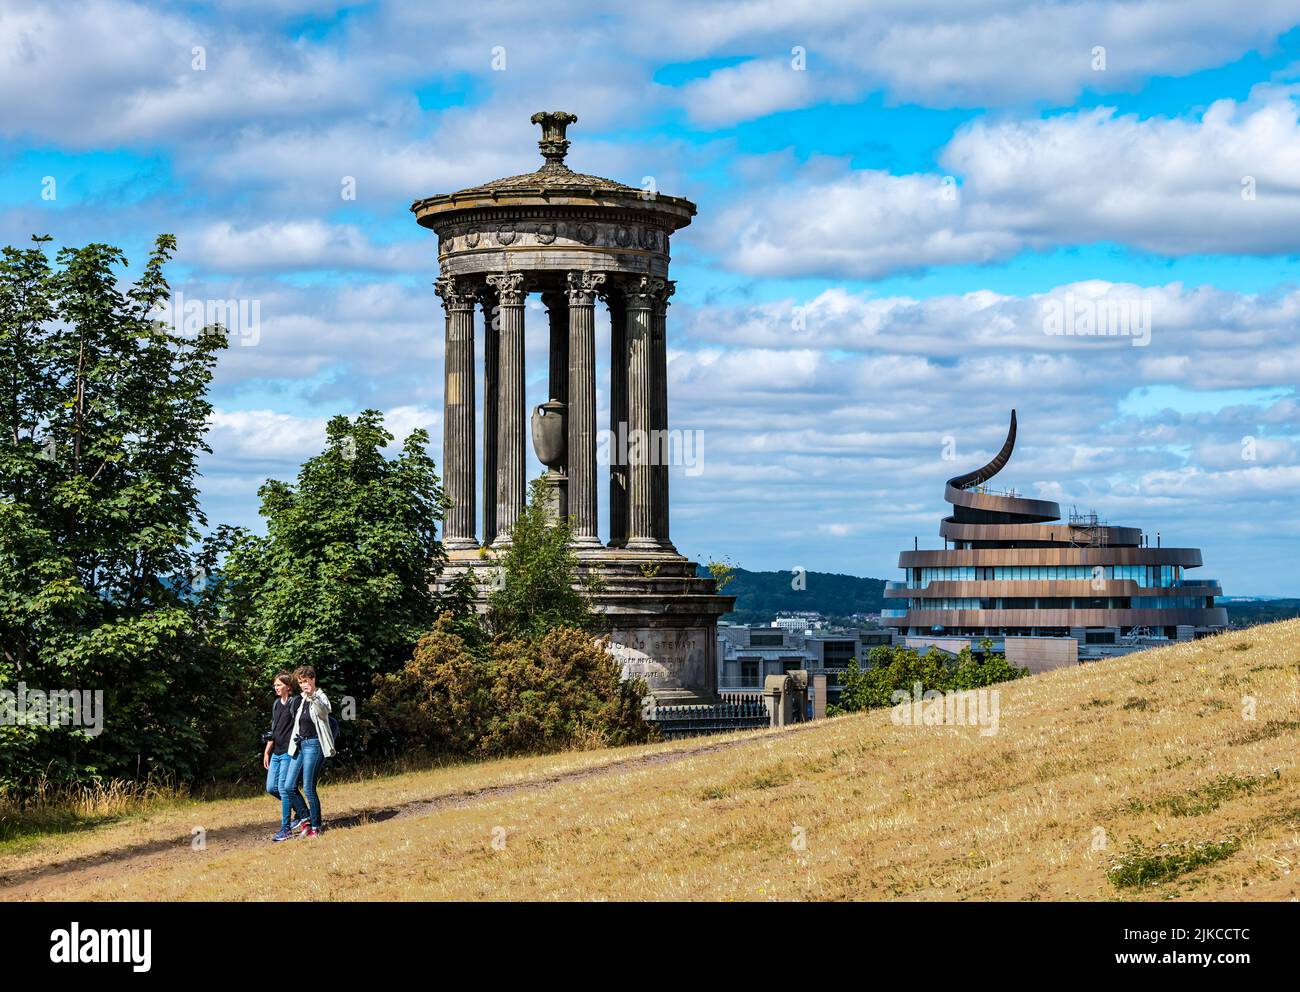 Vista desde Calton Hill y el Monumento Dugald Stewart sobre el horizonte de la ciudad, Edimburgo, Escocia, Reino Unido Foto de stock